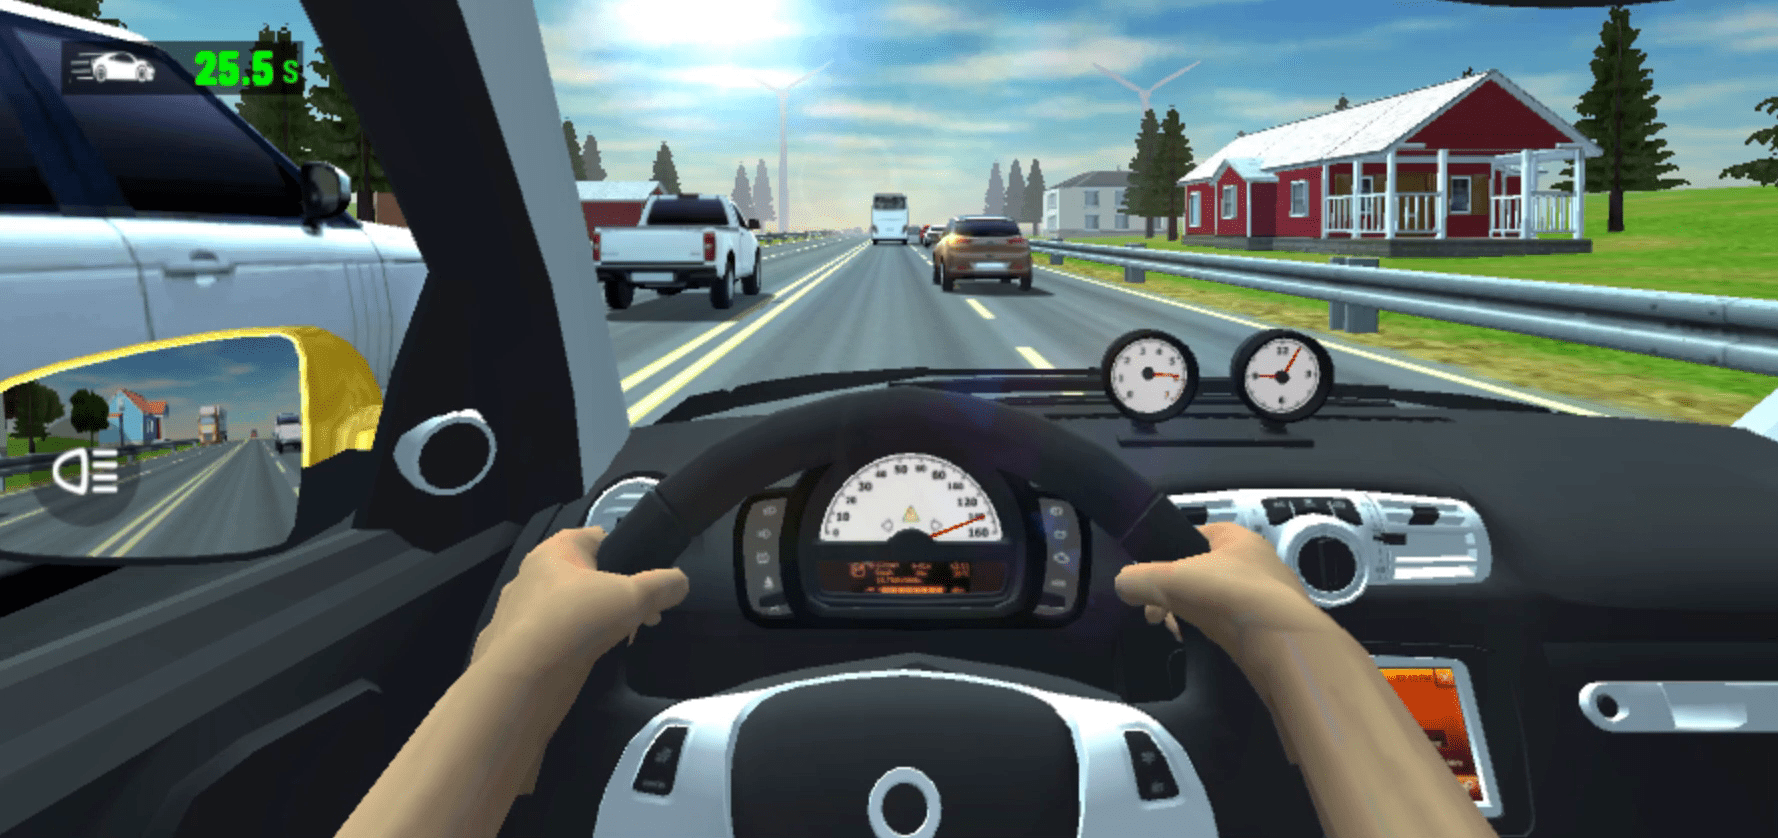 Traffic Jam 3D Screenshot 4